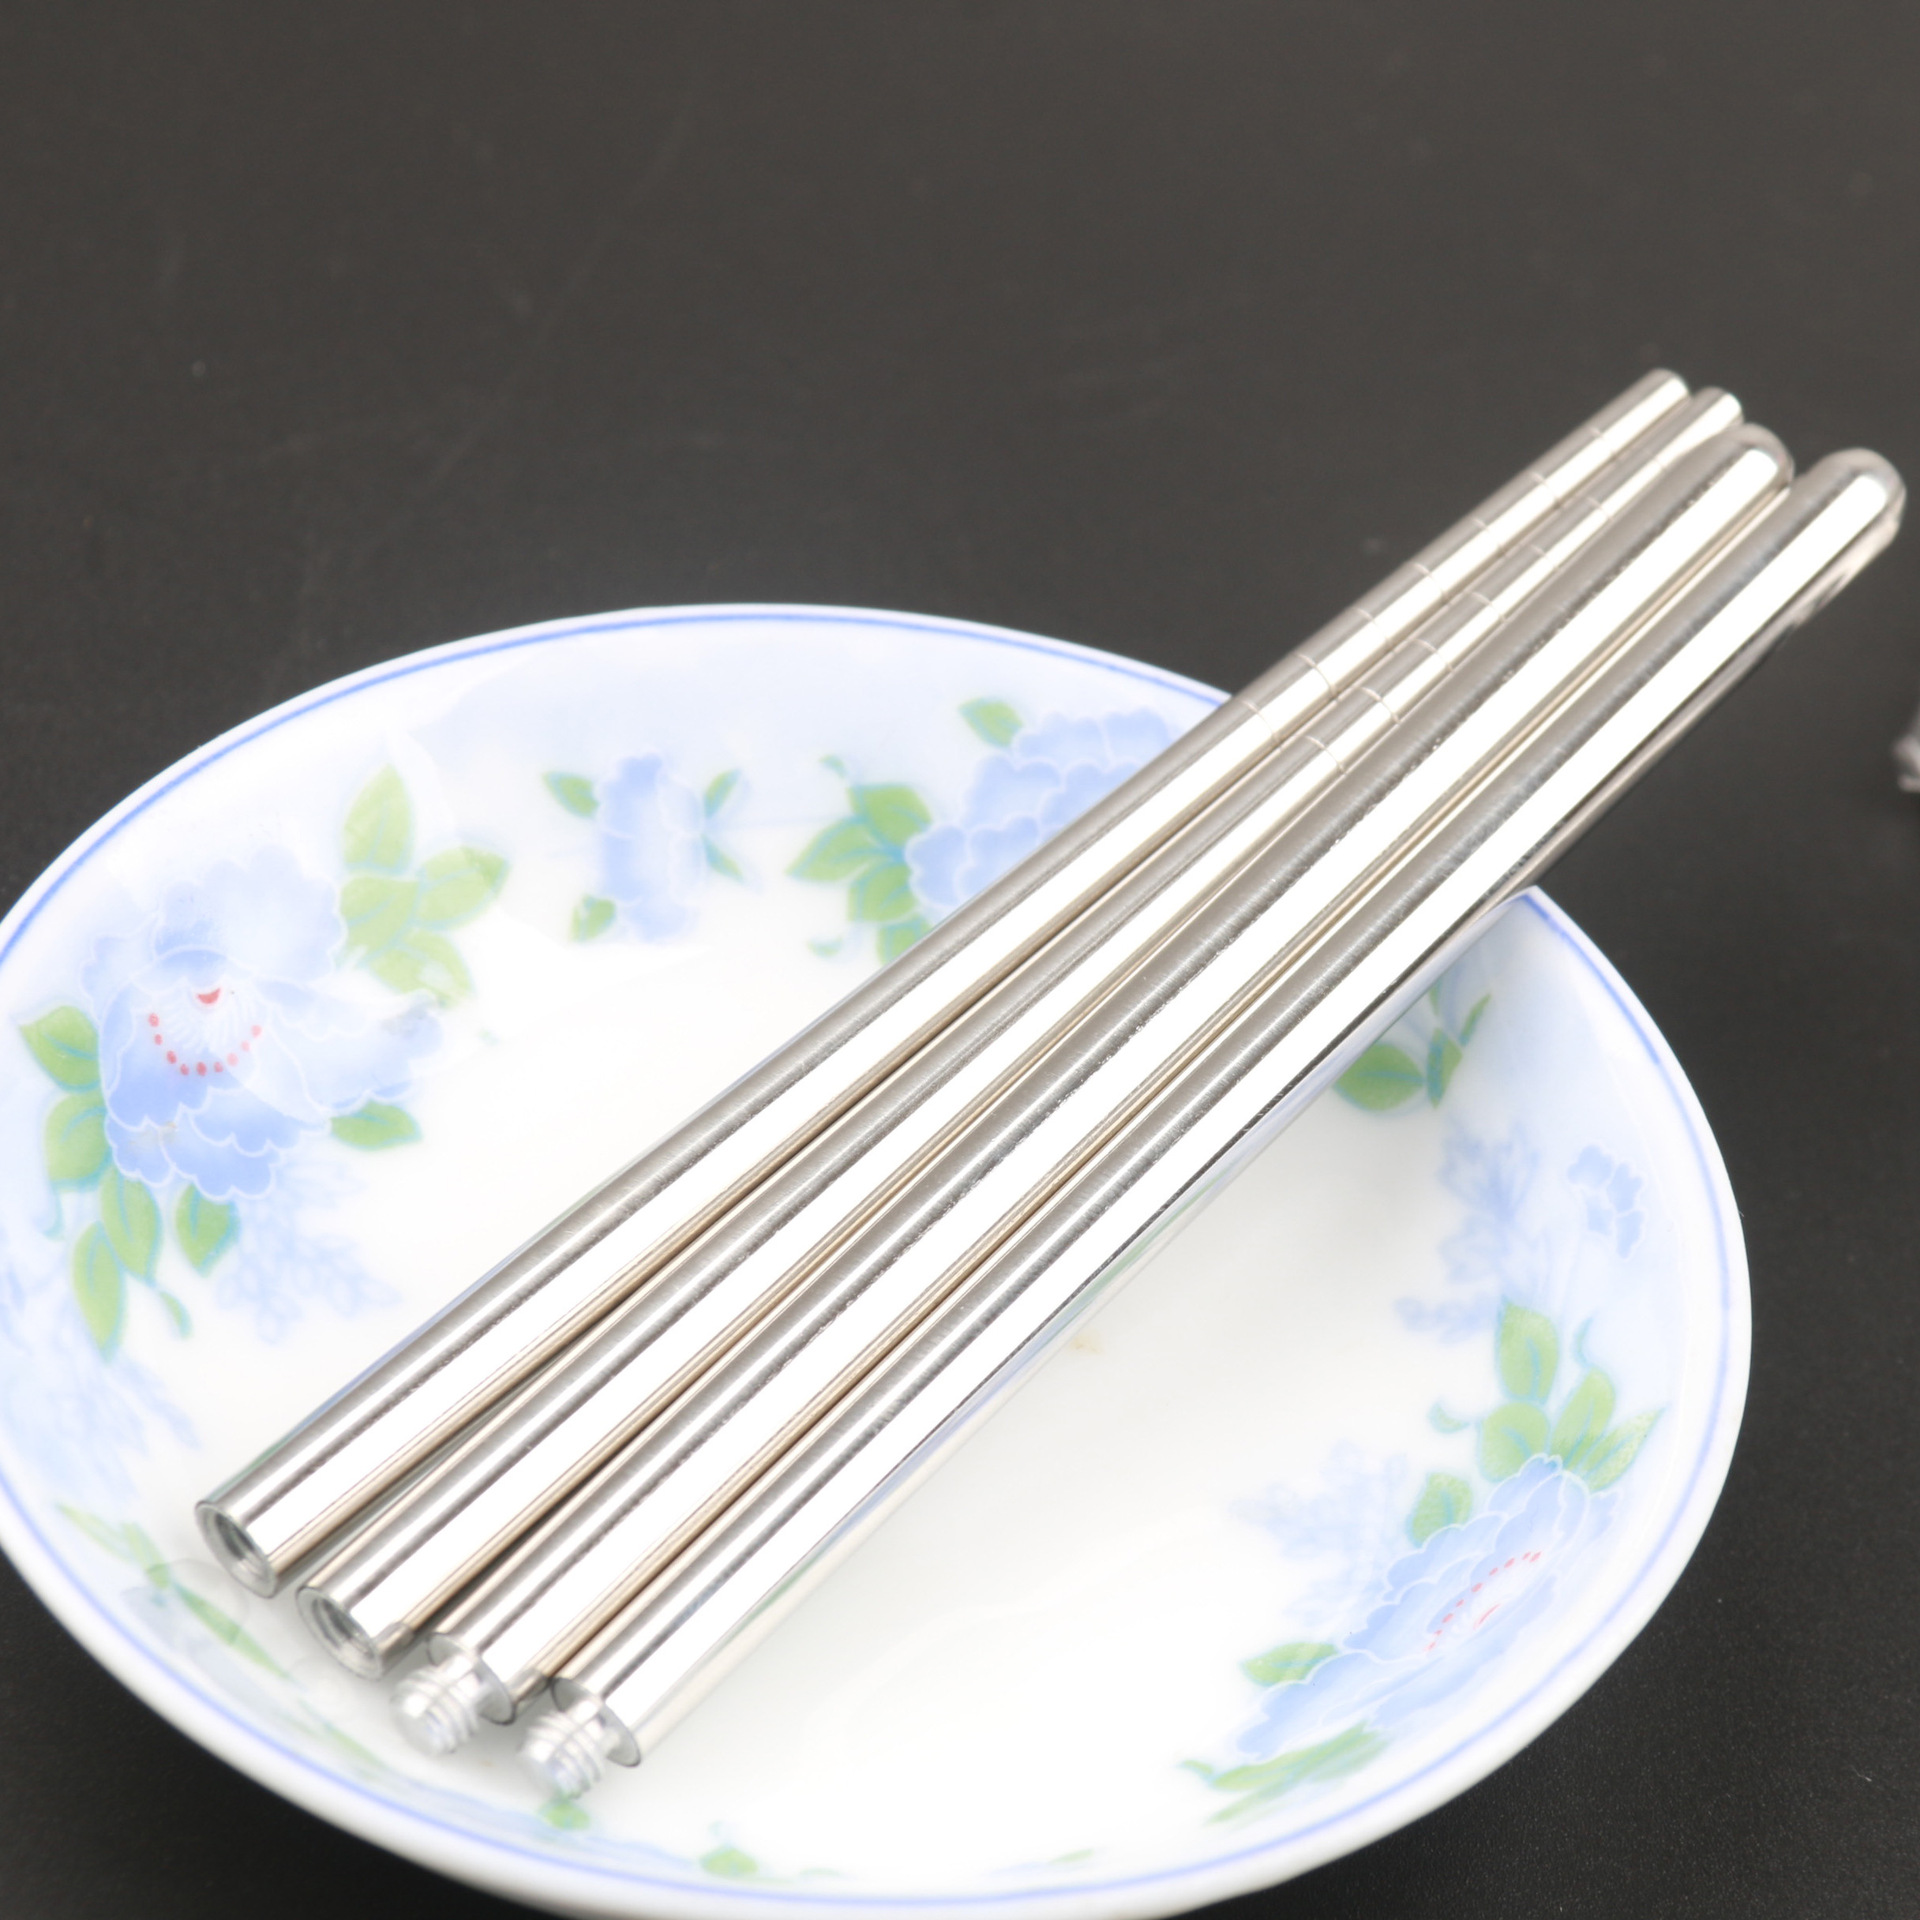 供應不鏽鋼折疊筷子 約22g折節筷 兩節環保便攜筷 螺絲擰狀筷子